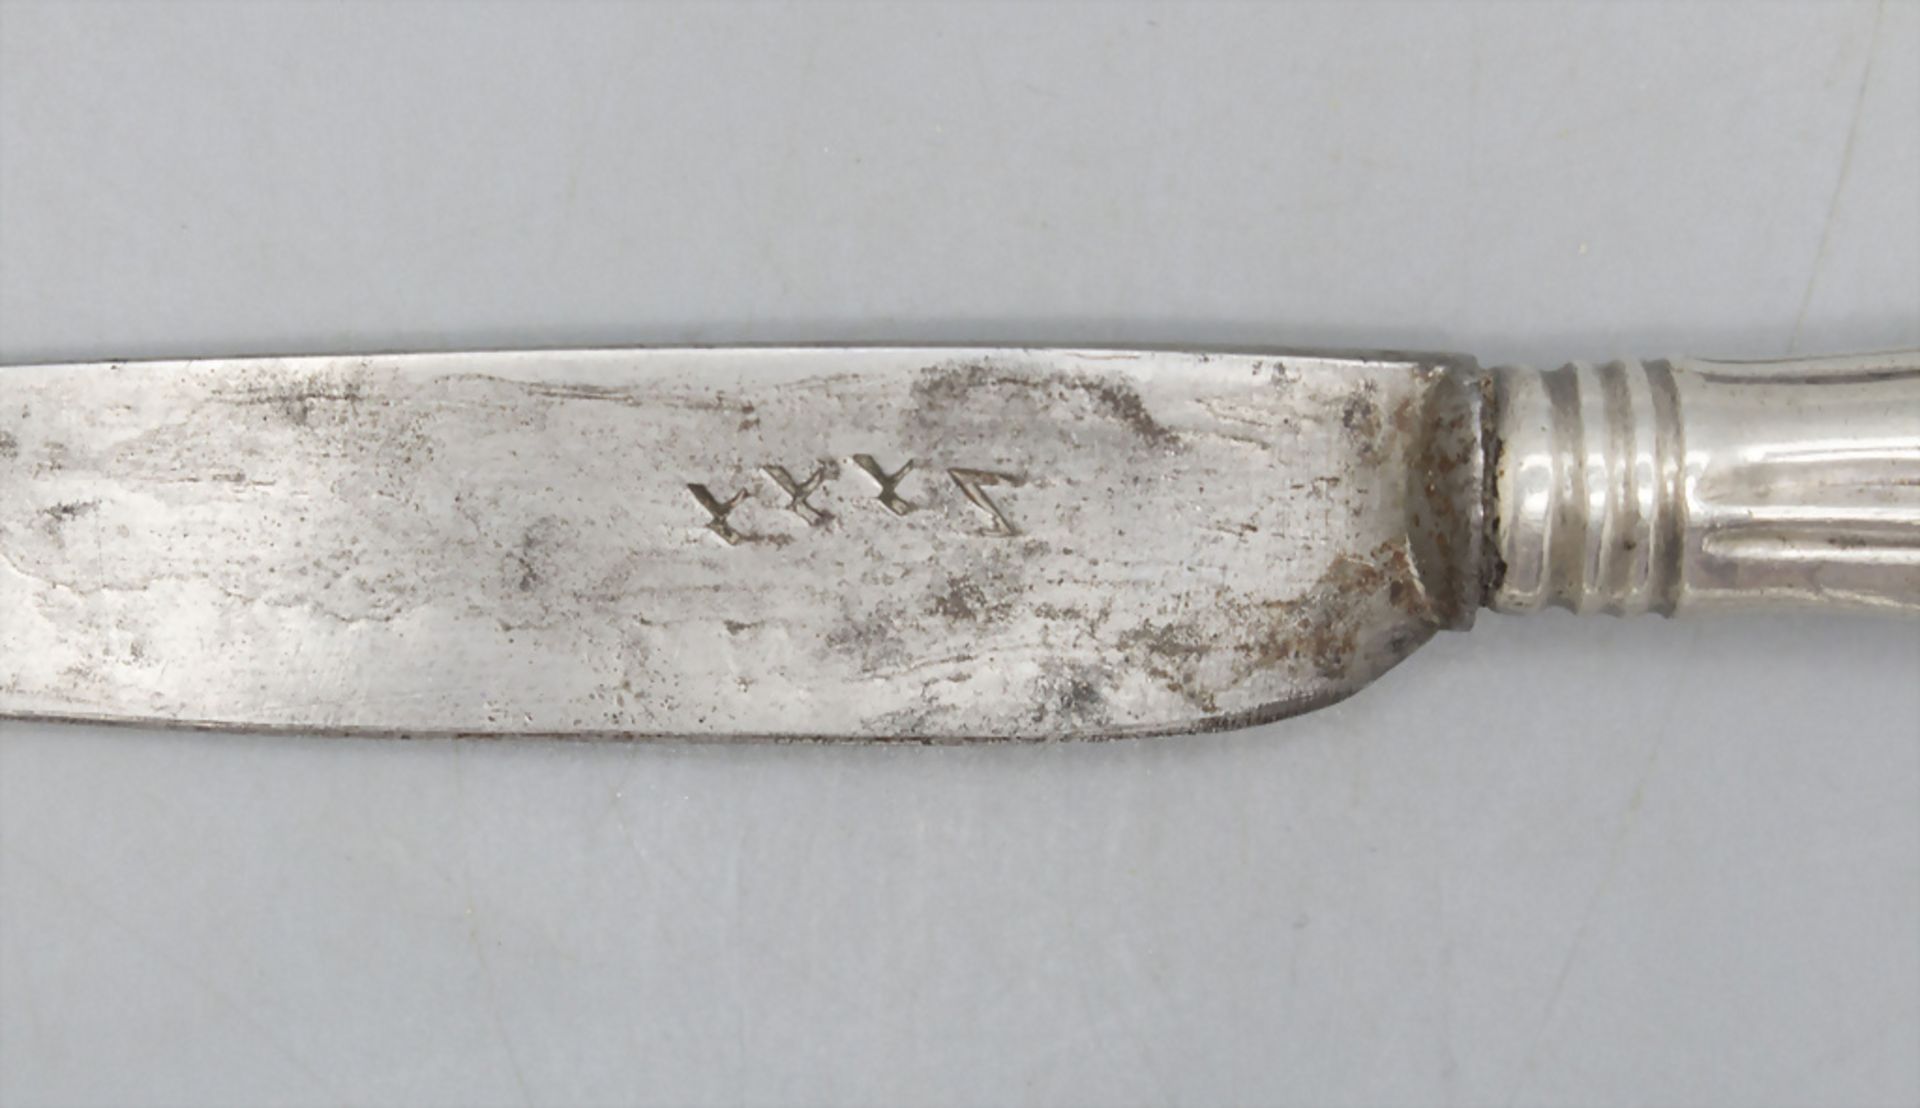 Messer / A knife, deutsch, wohl Heilbronn, 1. Hälfte 18. Jh. - Bild 2 aus 5